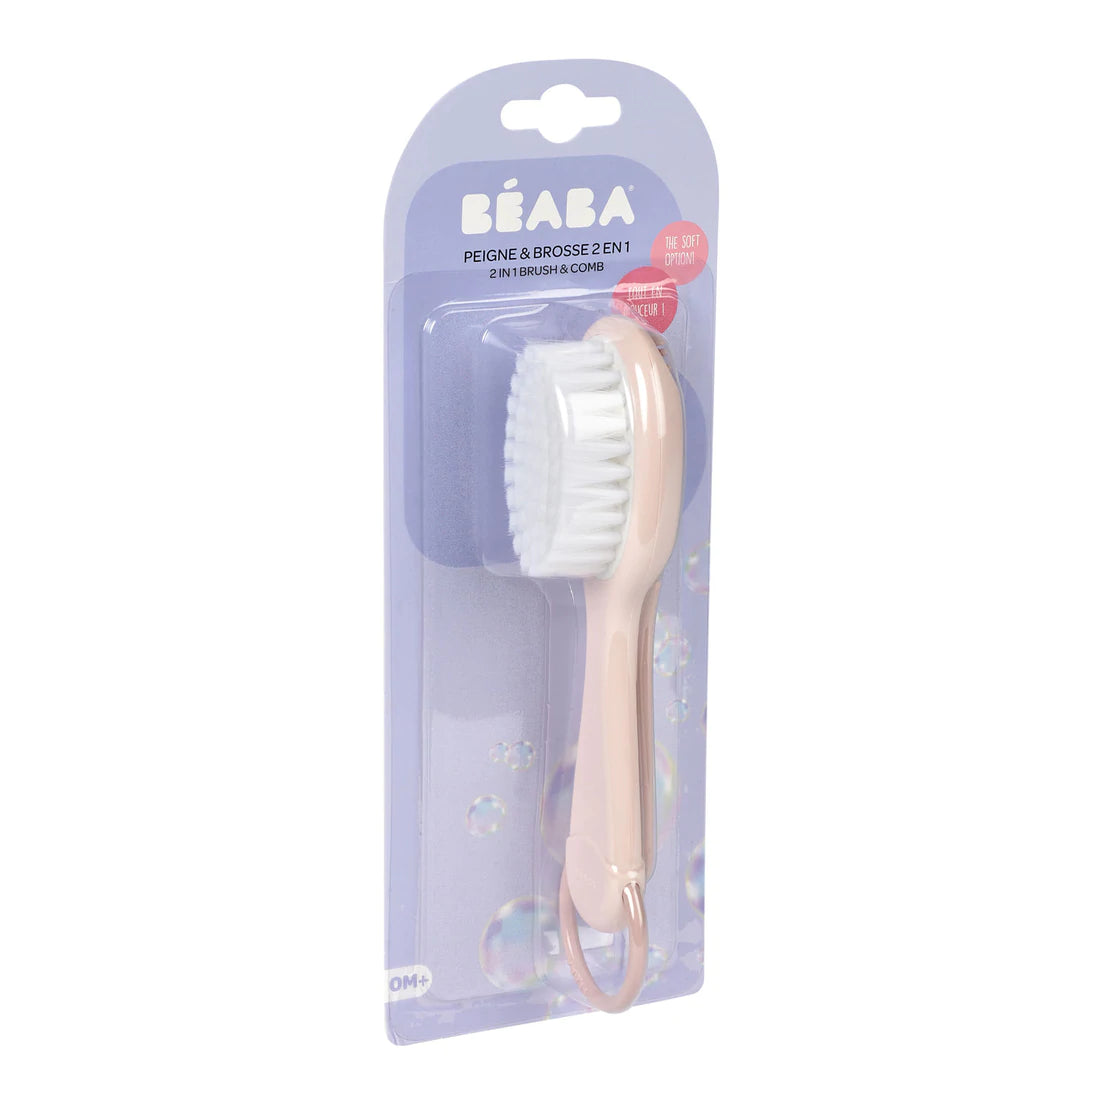 Beaba Baby Brush / Comb-Bebehaus